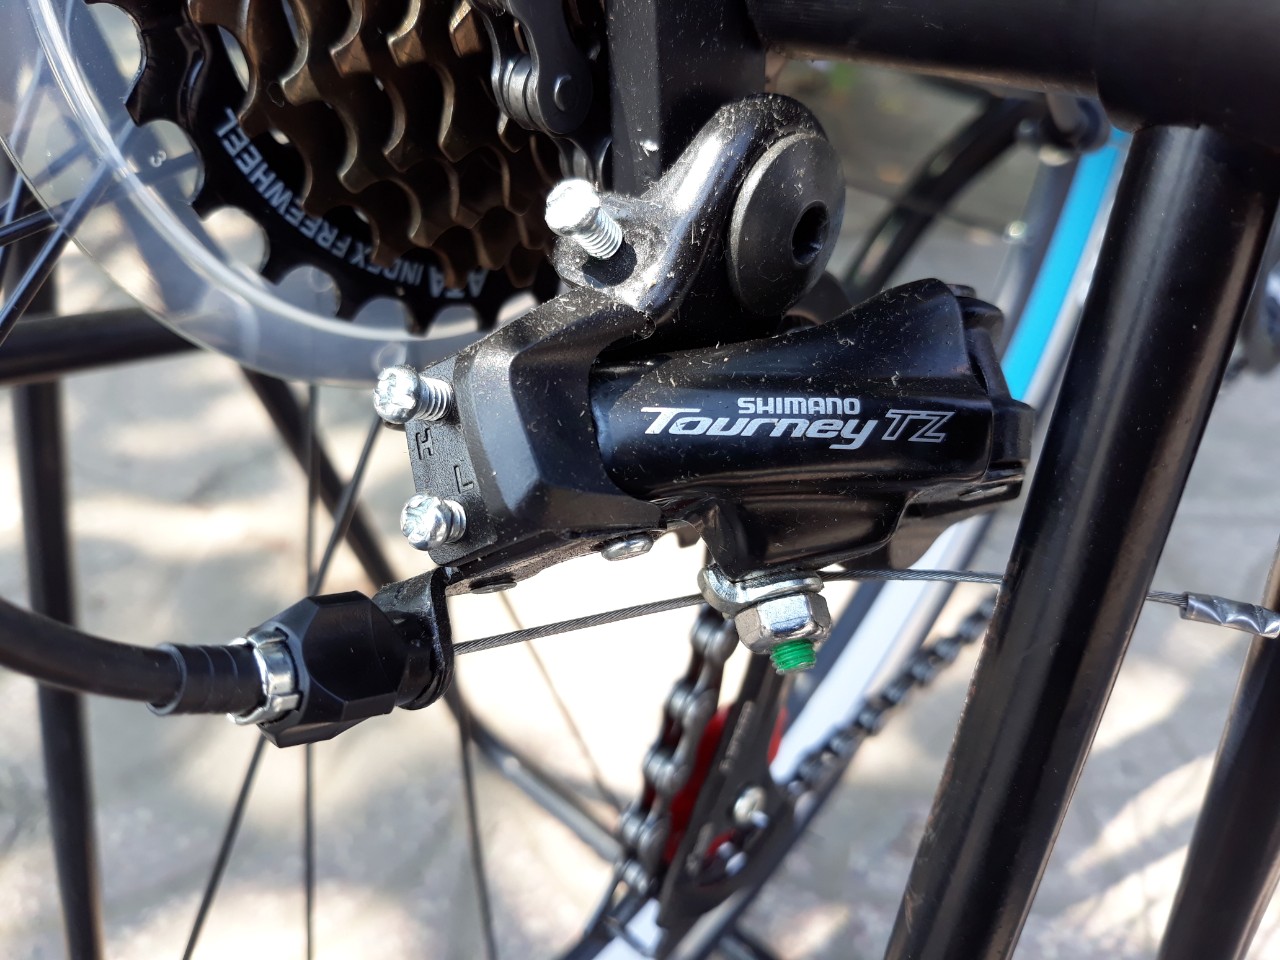 Xe đạp đua TRINX TEMPO1.0 2019 đen xanh dương trắng